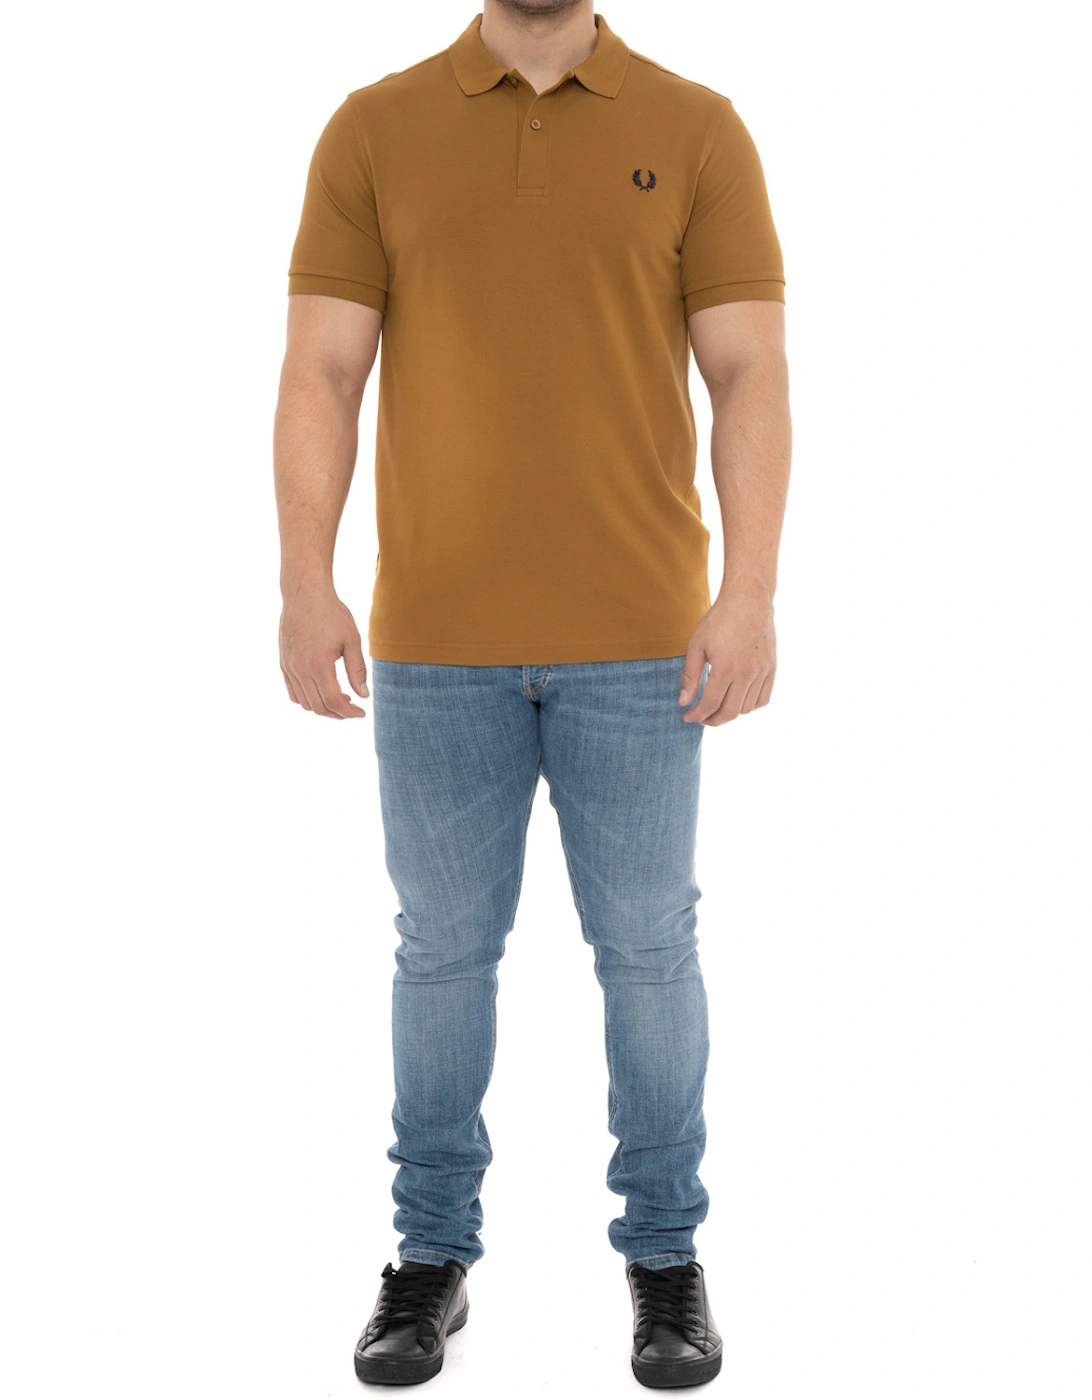 Mens Plain Polo Shirt (Caramel Brown)